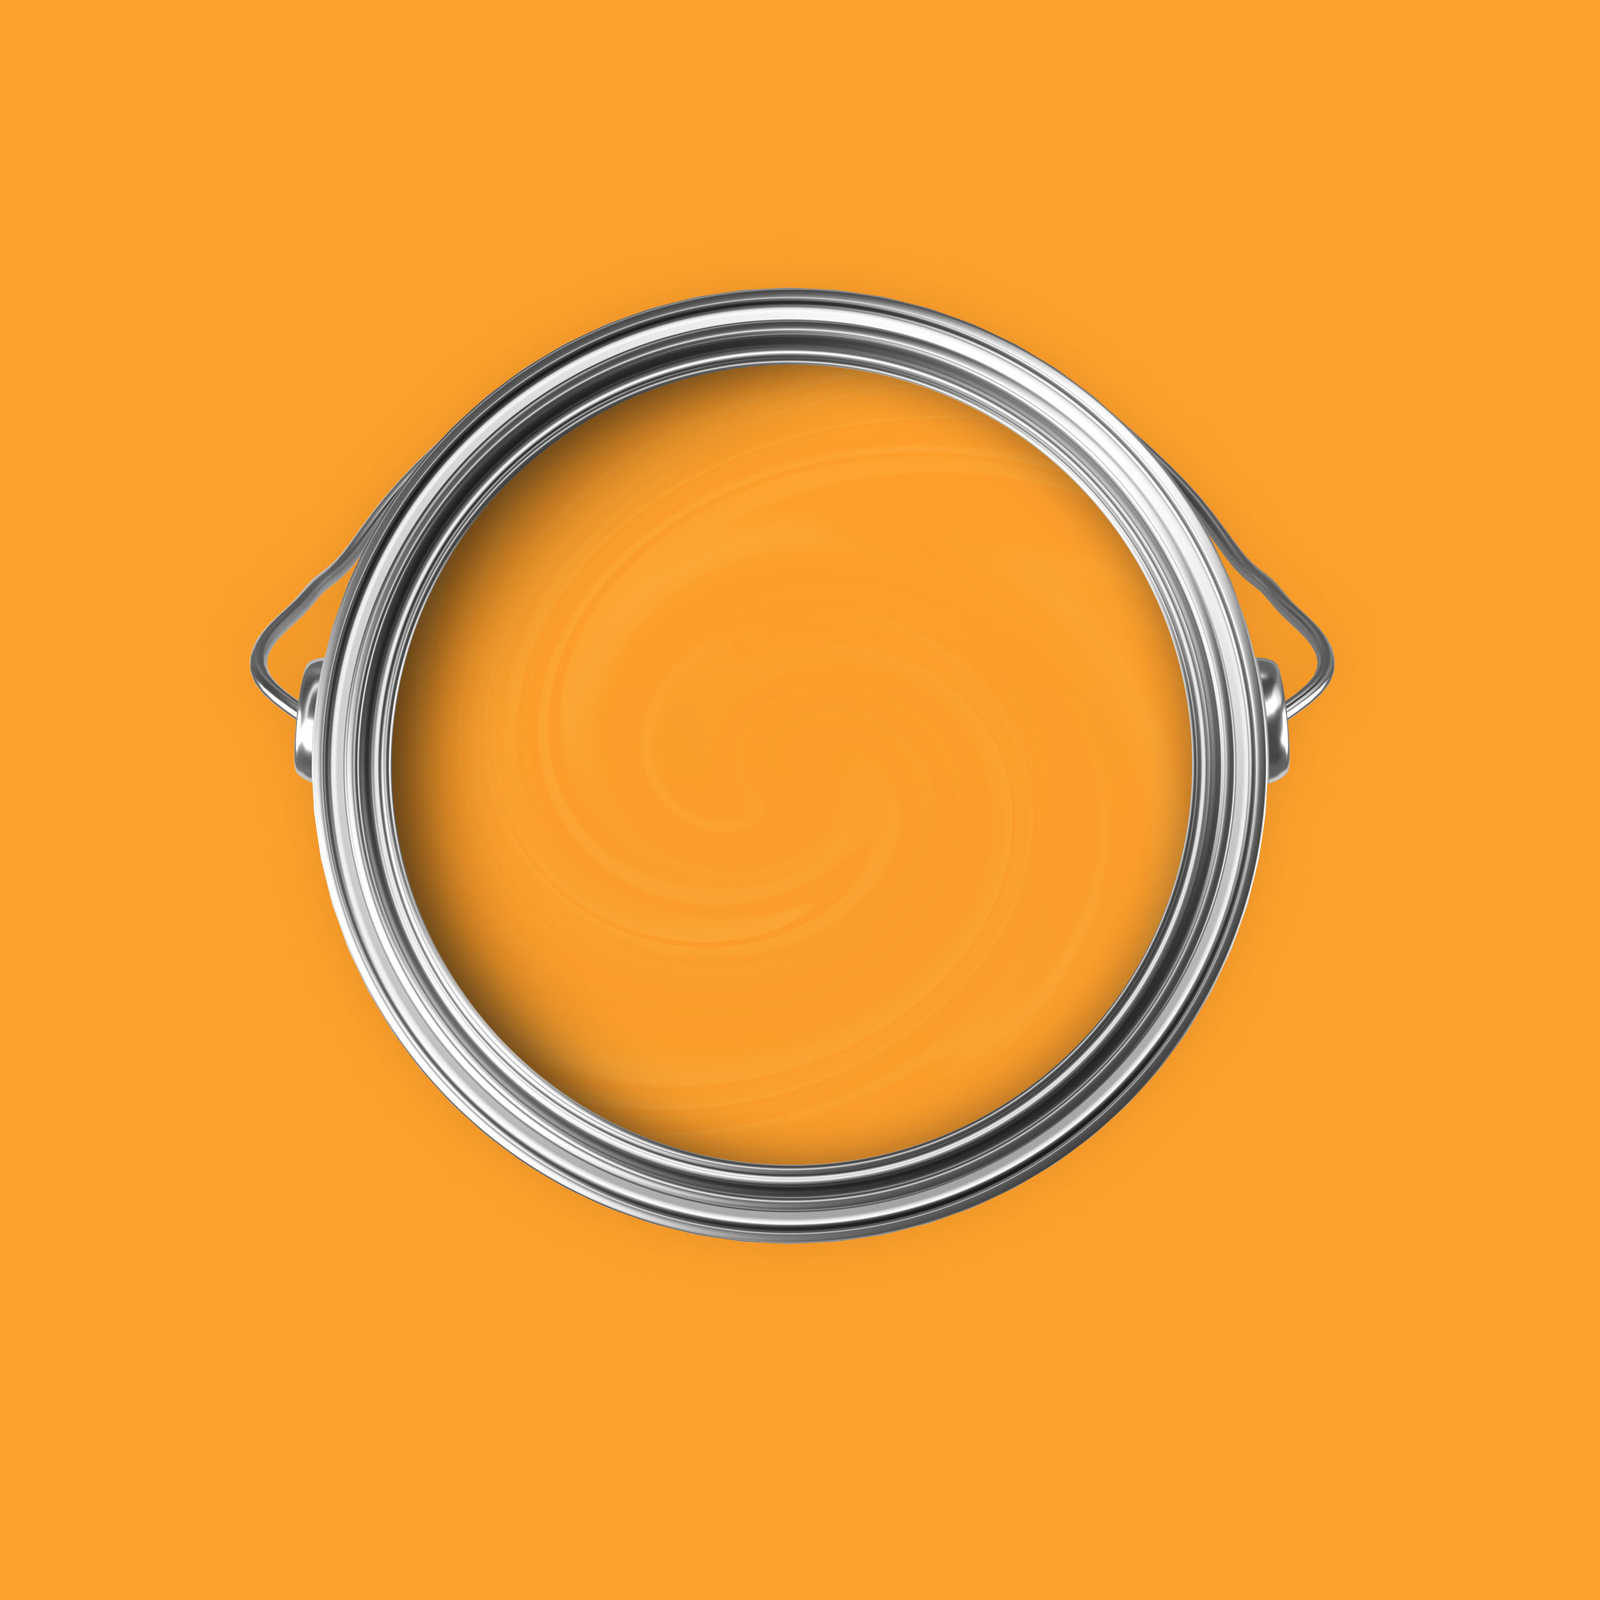             Premium Muurverf Vrolijk Honinggeel »Juicy Yellow« NW807 – 5 liter
        